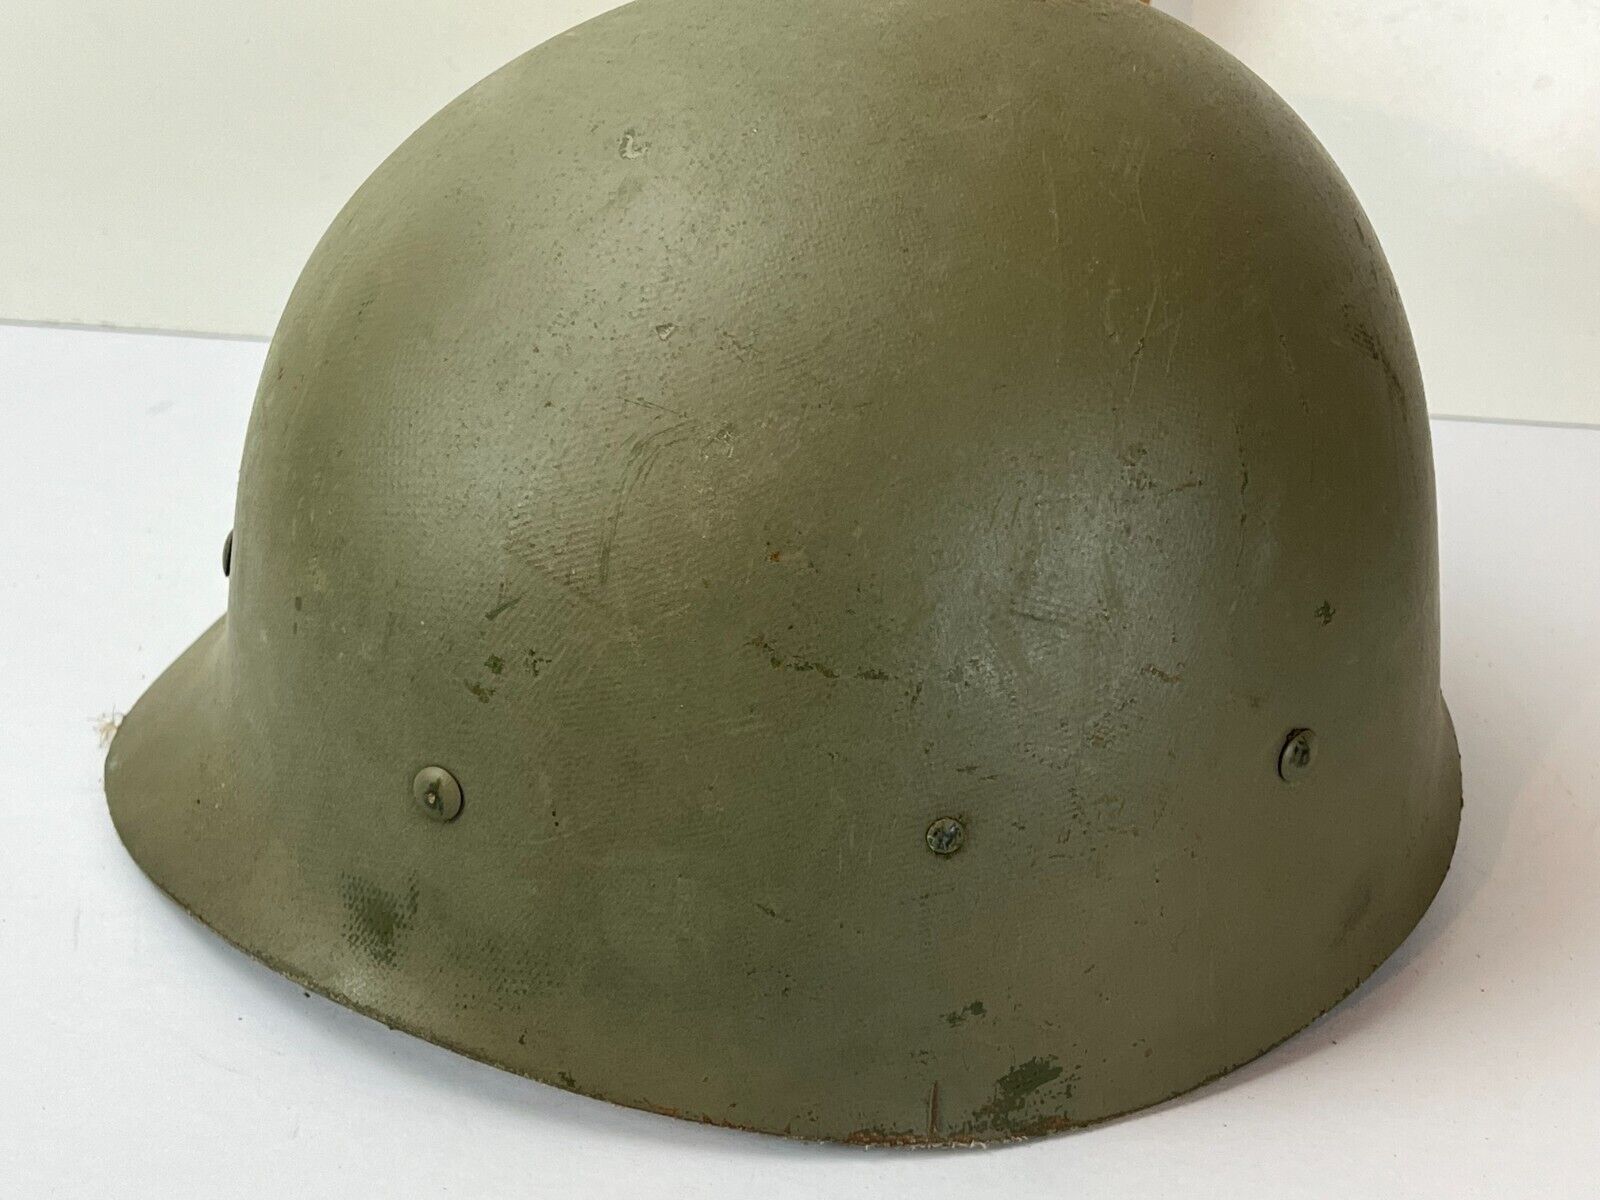 Original 1973 Vietnam War Ground Troops Helmet Liner Type I 1 DSA 100 4 C 0208